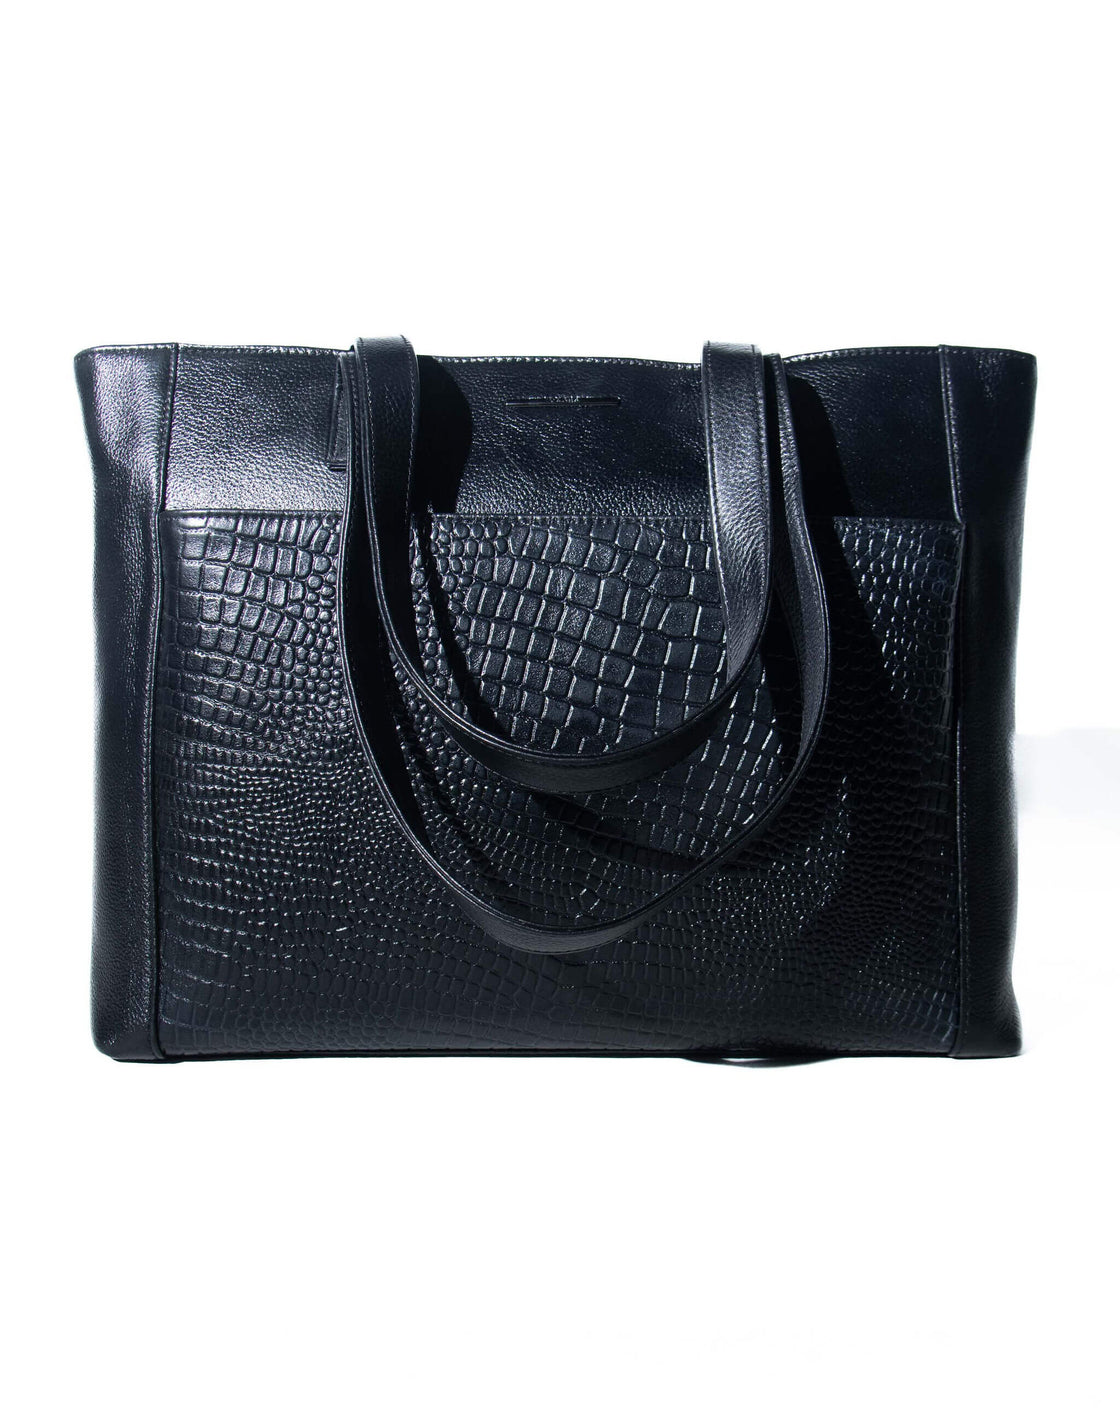 Structure bag - shoulder strap